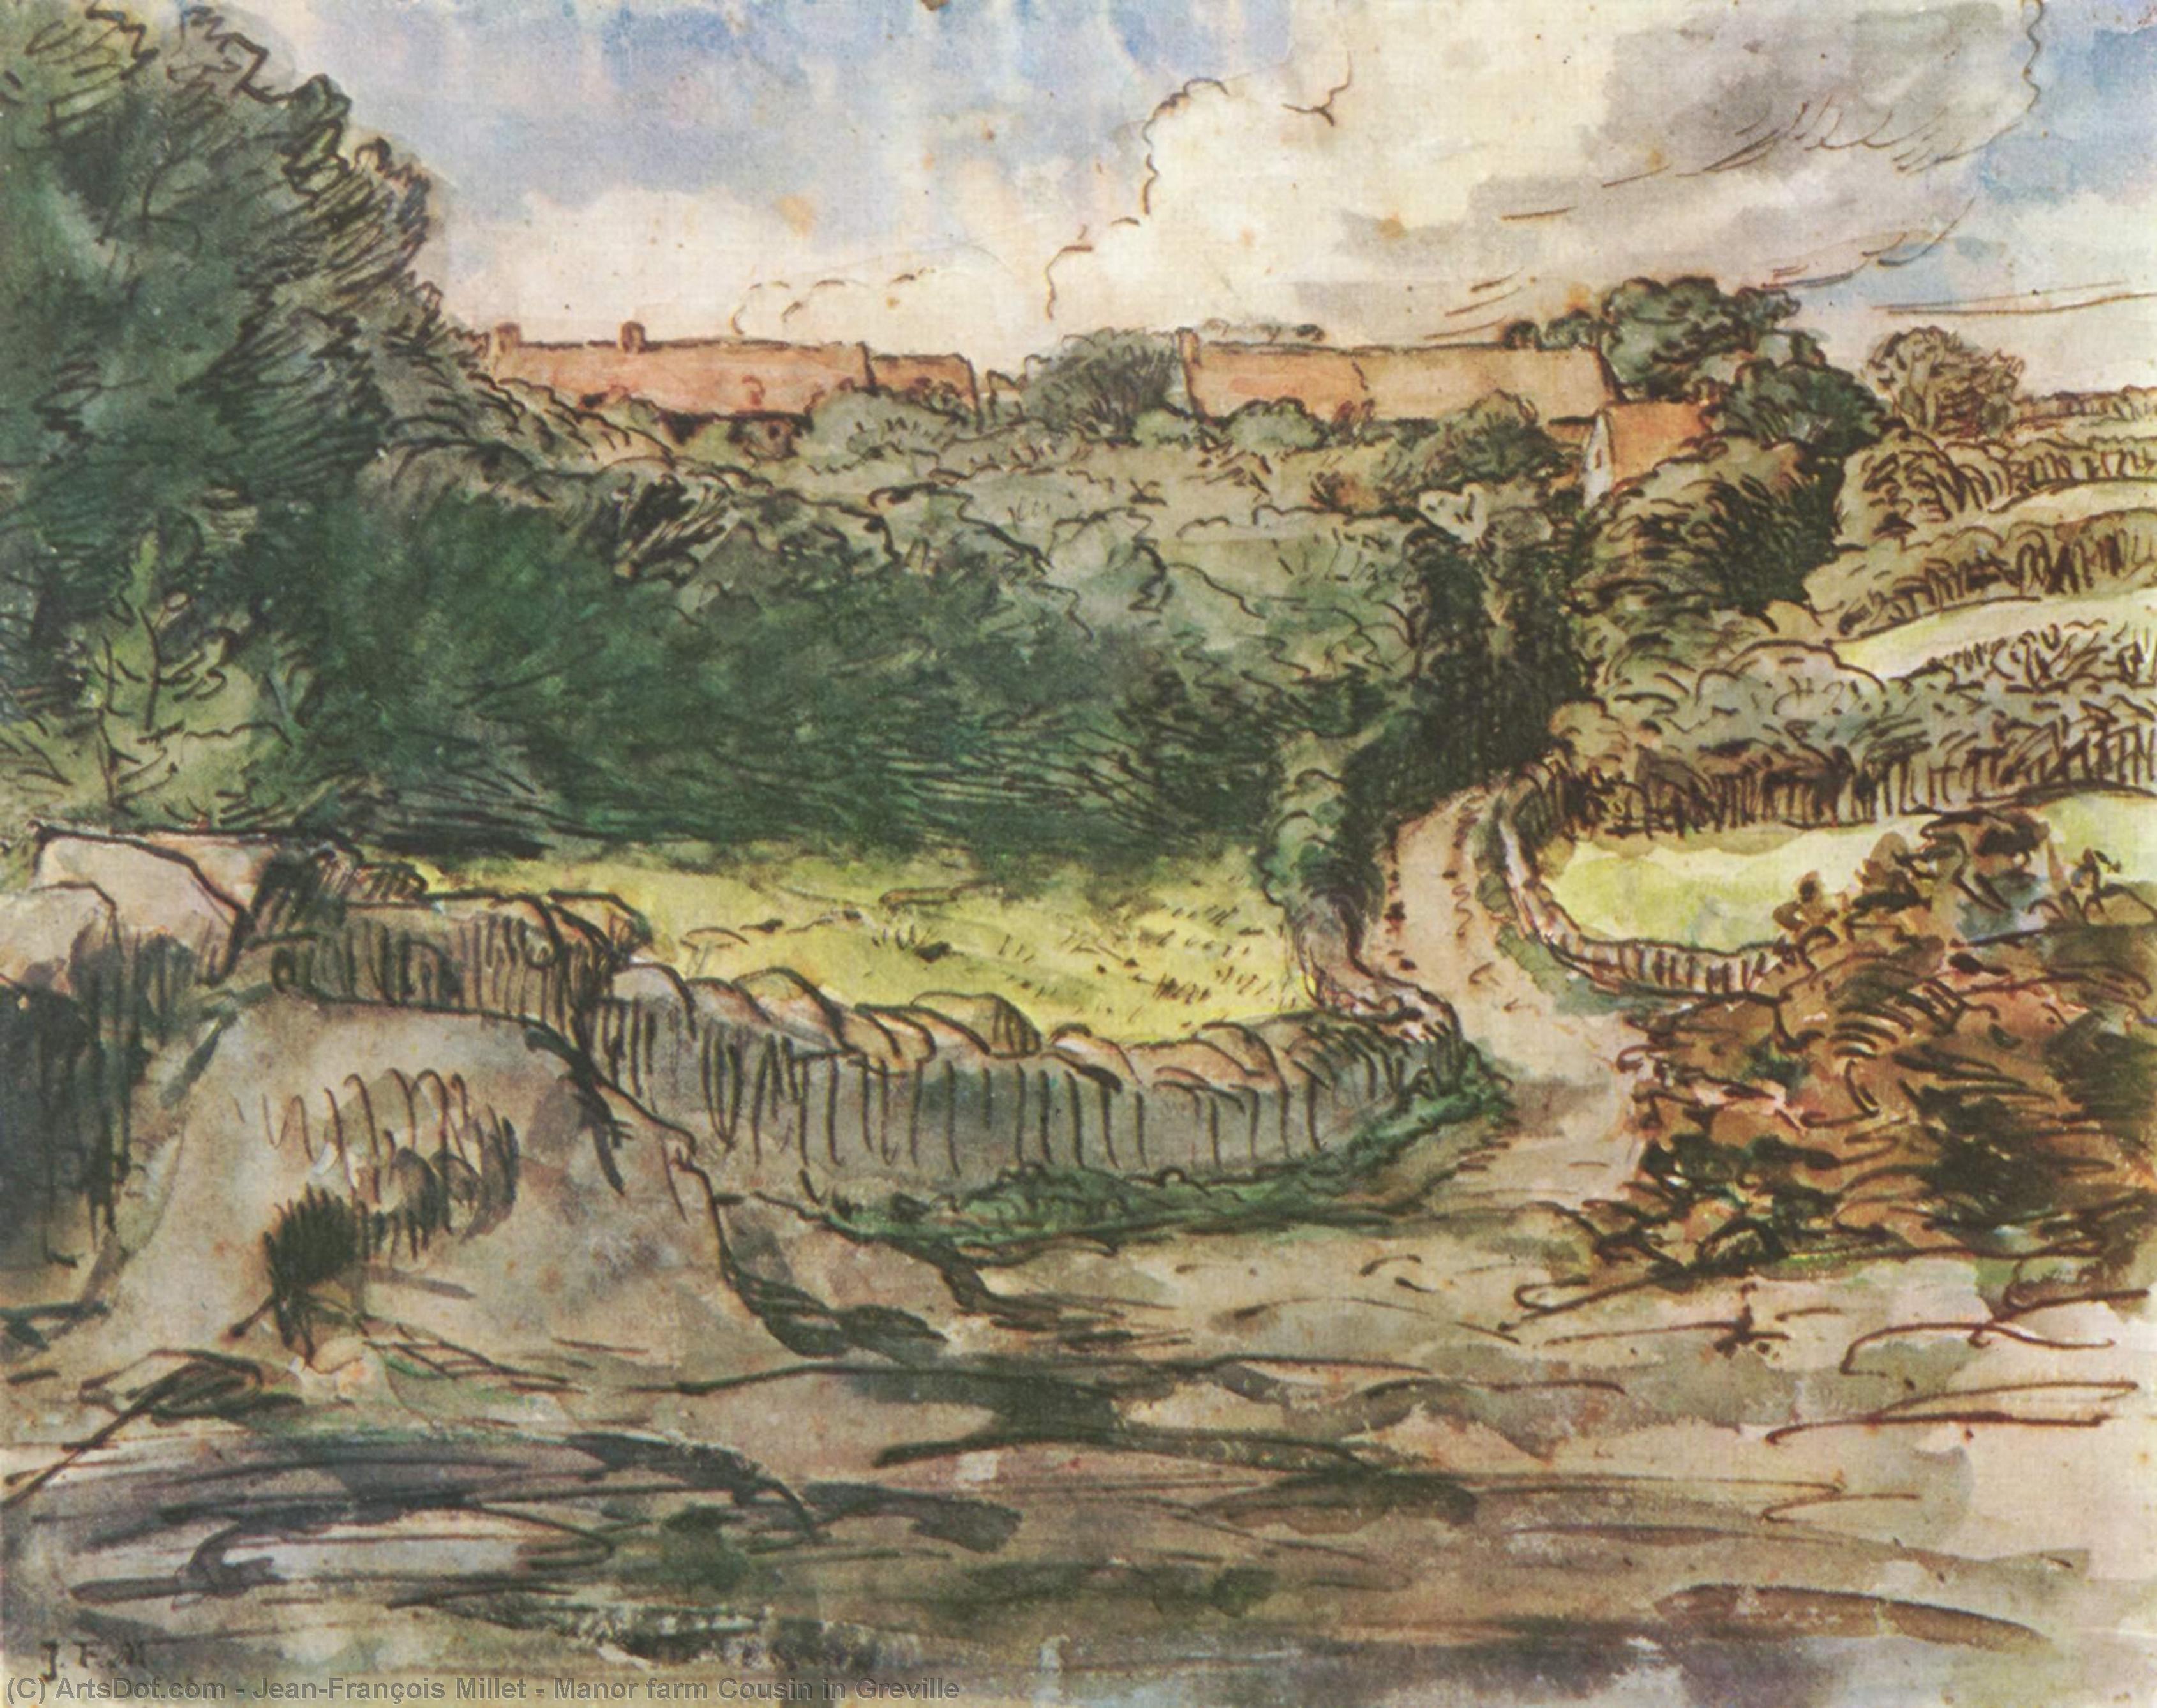 Wikioo.org - Bách khoa toàn thư về mỹ thuật - Vẽ tranh, Tác phẩm nghệ thuật Jean-François Millet - Manor farm Cousin in Greville